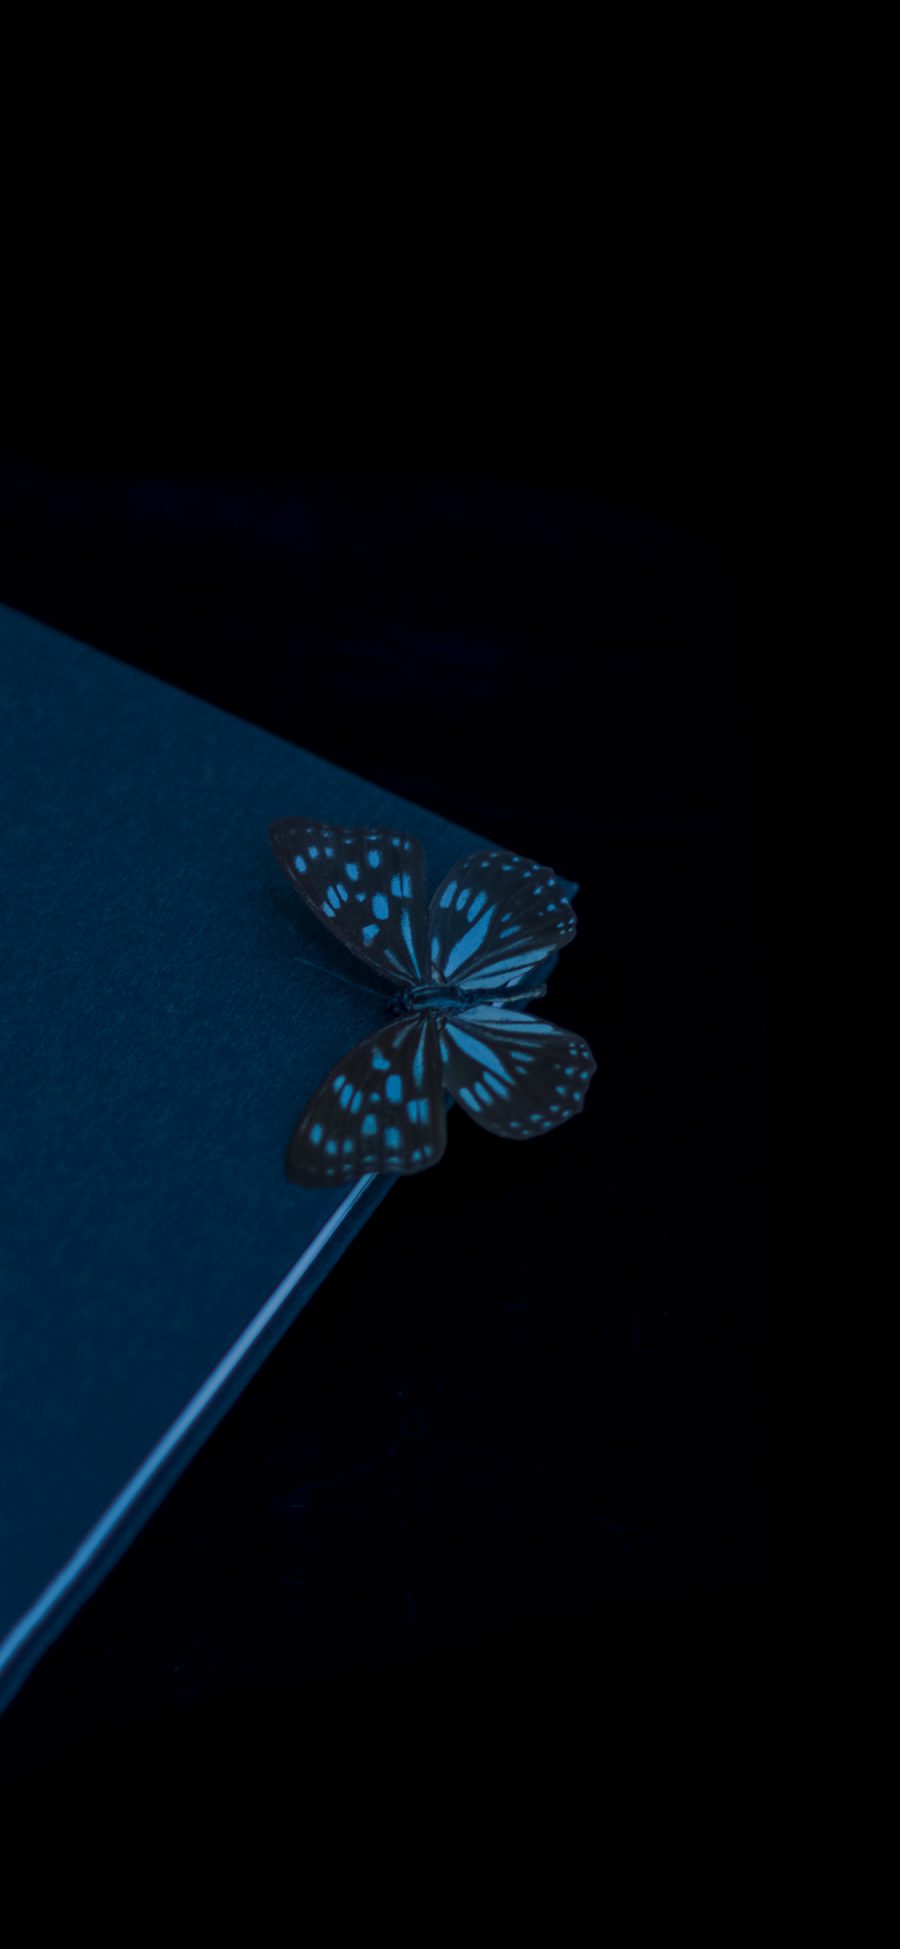 [2436×1125]蝴蝶 昆虫 翅膀 标本 书本 苹果手机壁纸图片